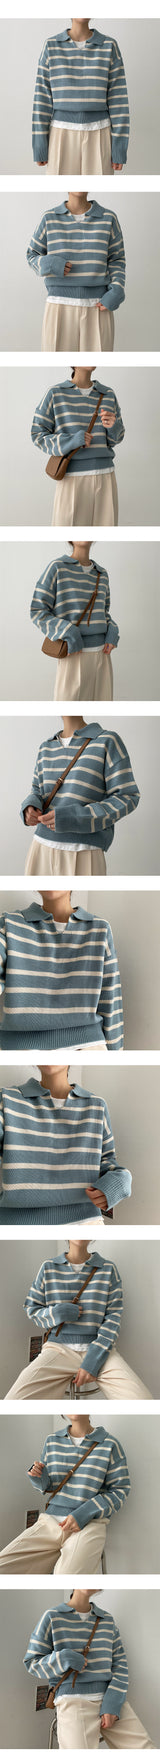 アティユニットカラーニットウェア / Atty Unit Price Collar Knitwear